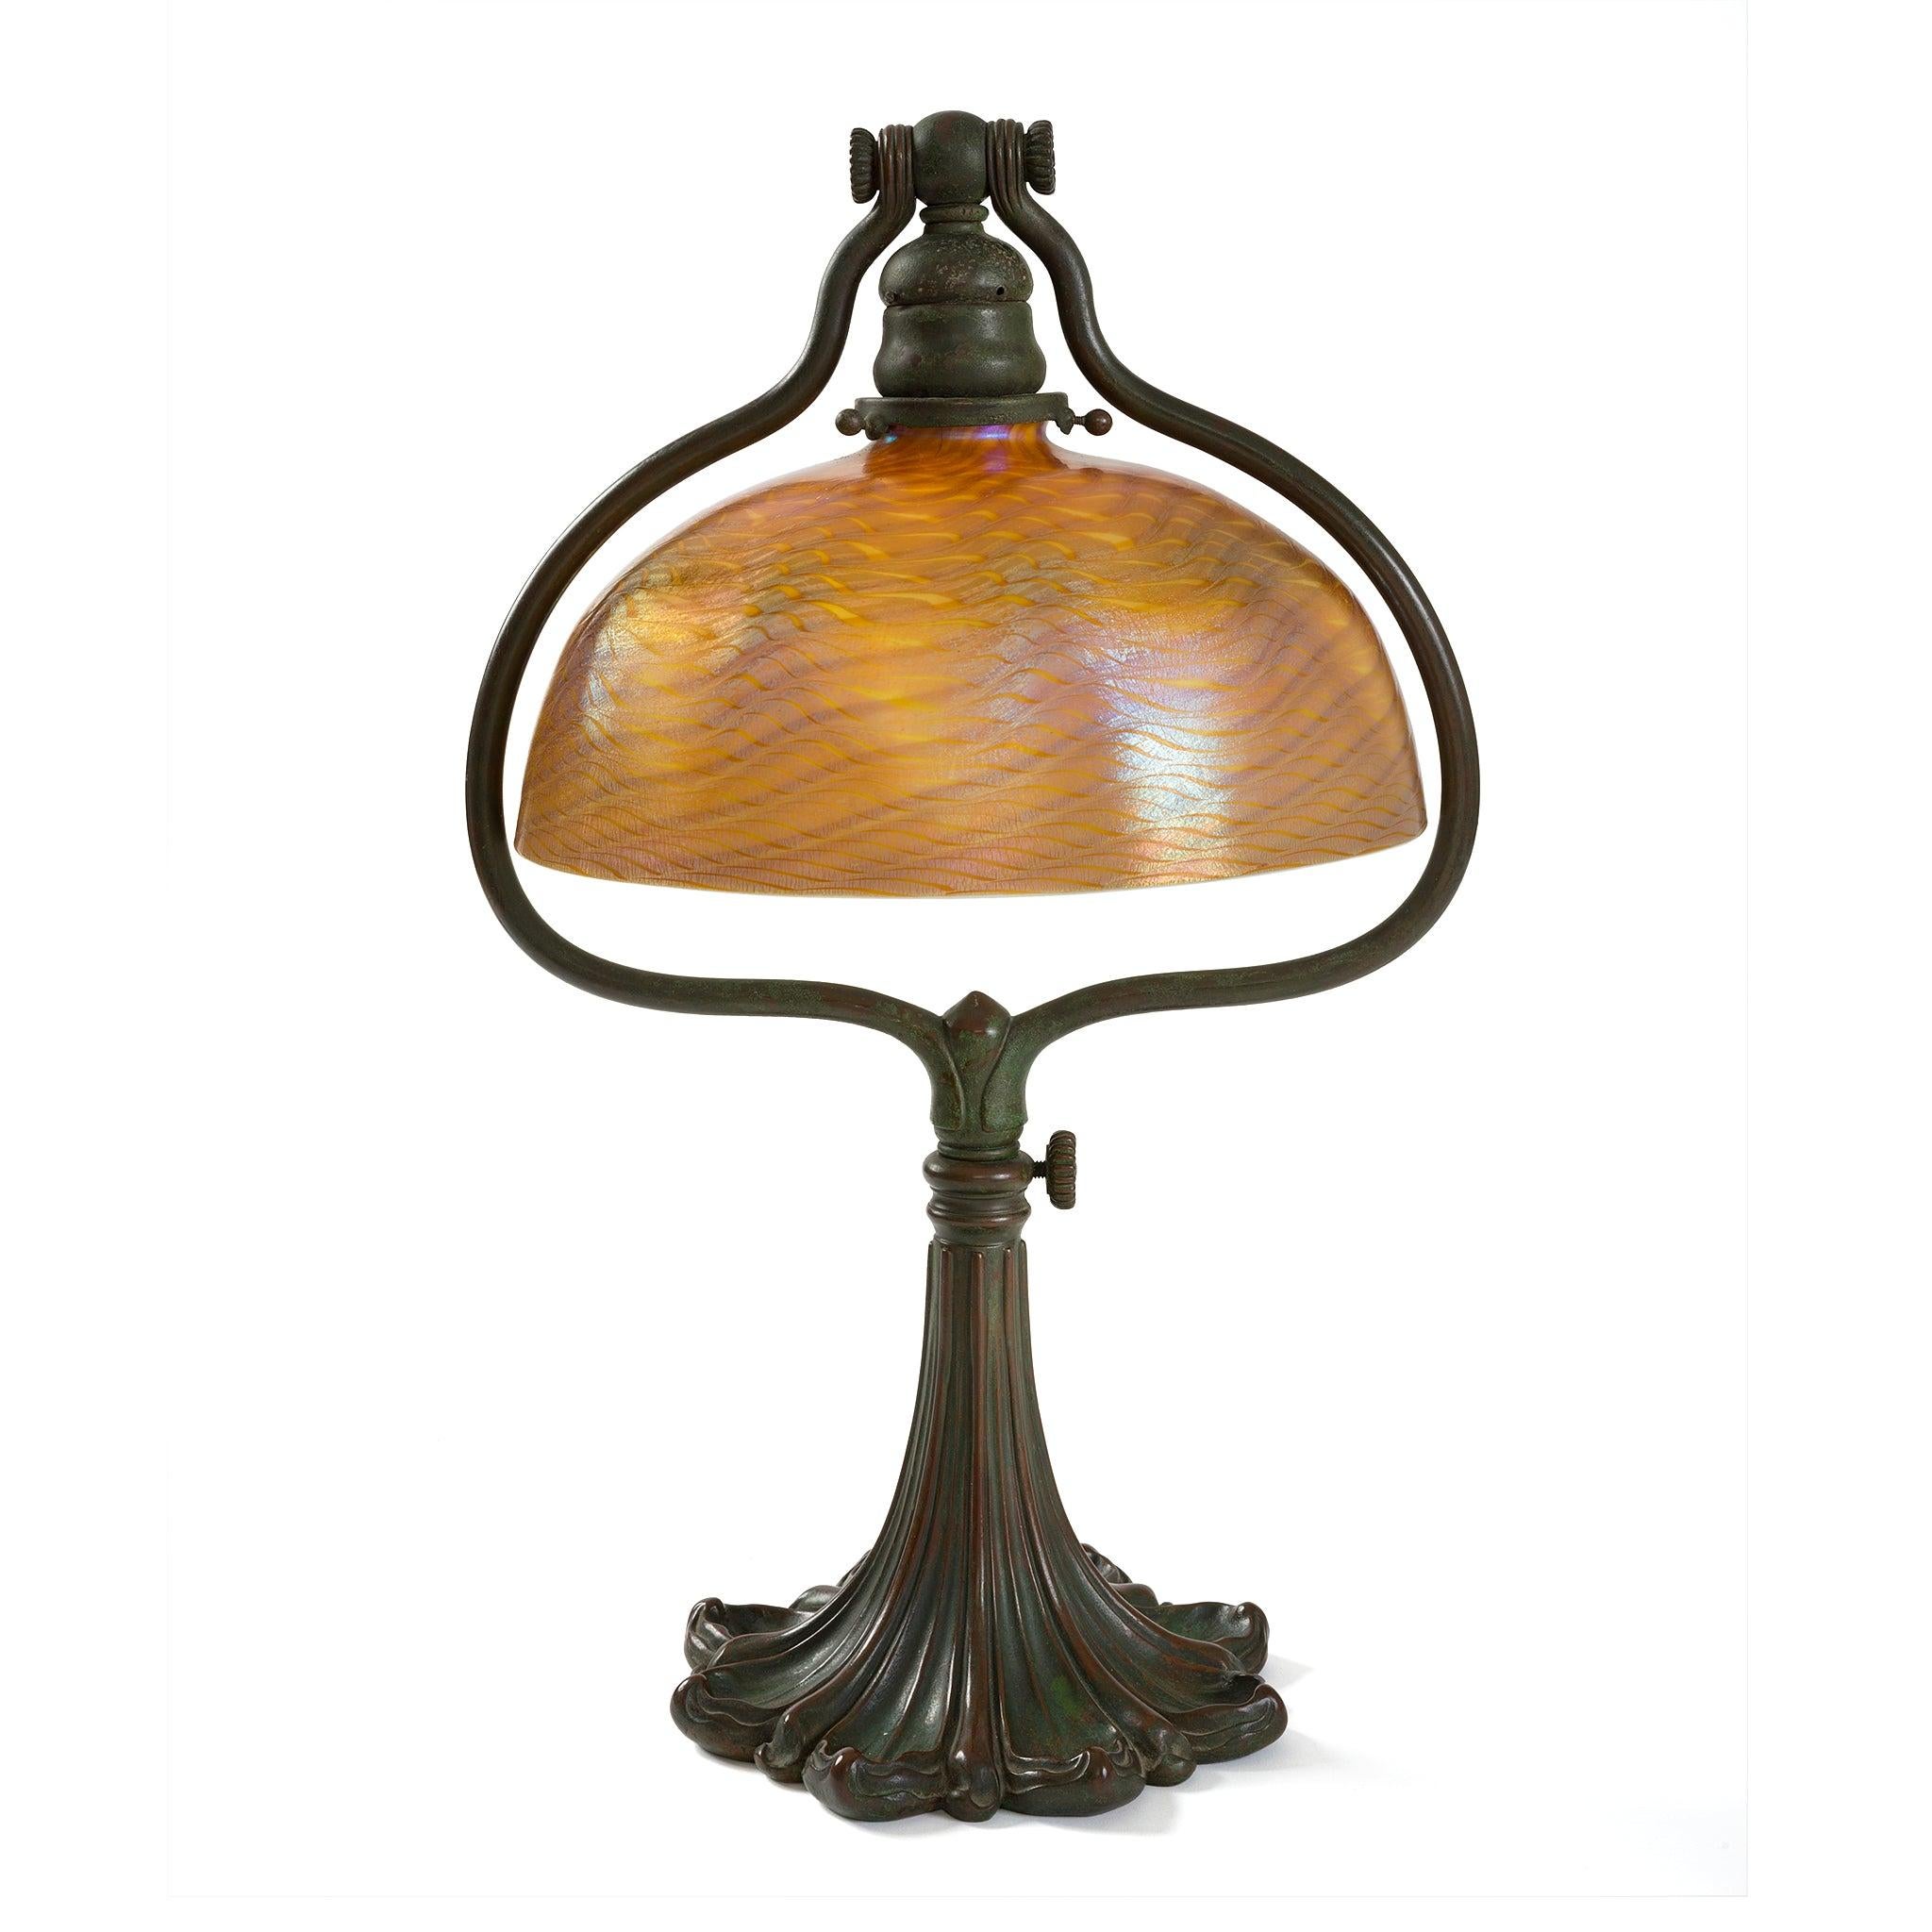 Diese Schreibtischlampe der Tiffany Studios aus der Zeit um 1910 hat einen Damaszener-Favril-Glasschirm auf einem verstellbaren Harfenfuß aus patinierter Bronze. Der subtil schillernde Schirm in bernsteinfarbenen, goldenen und grünen Tönen hängt an